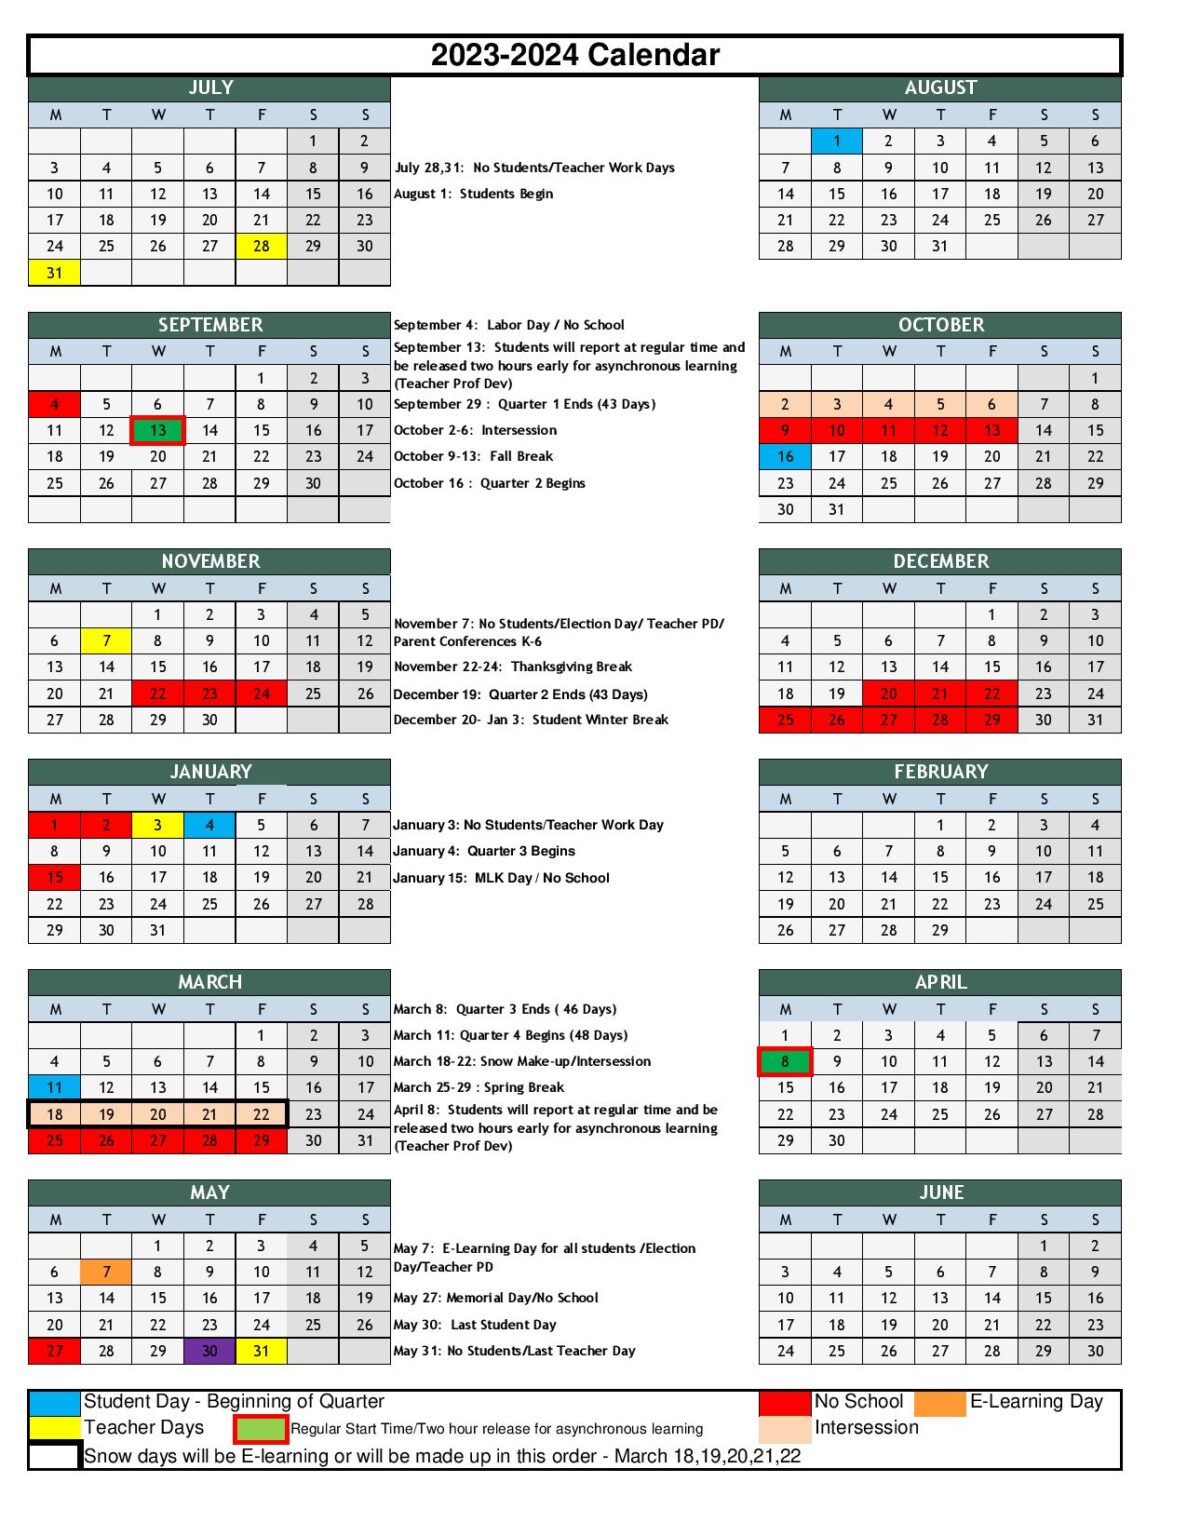 New Albany Floyd County Schools Calendar 20232024 in PDF